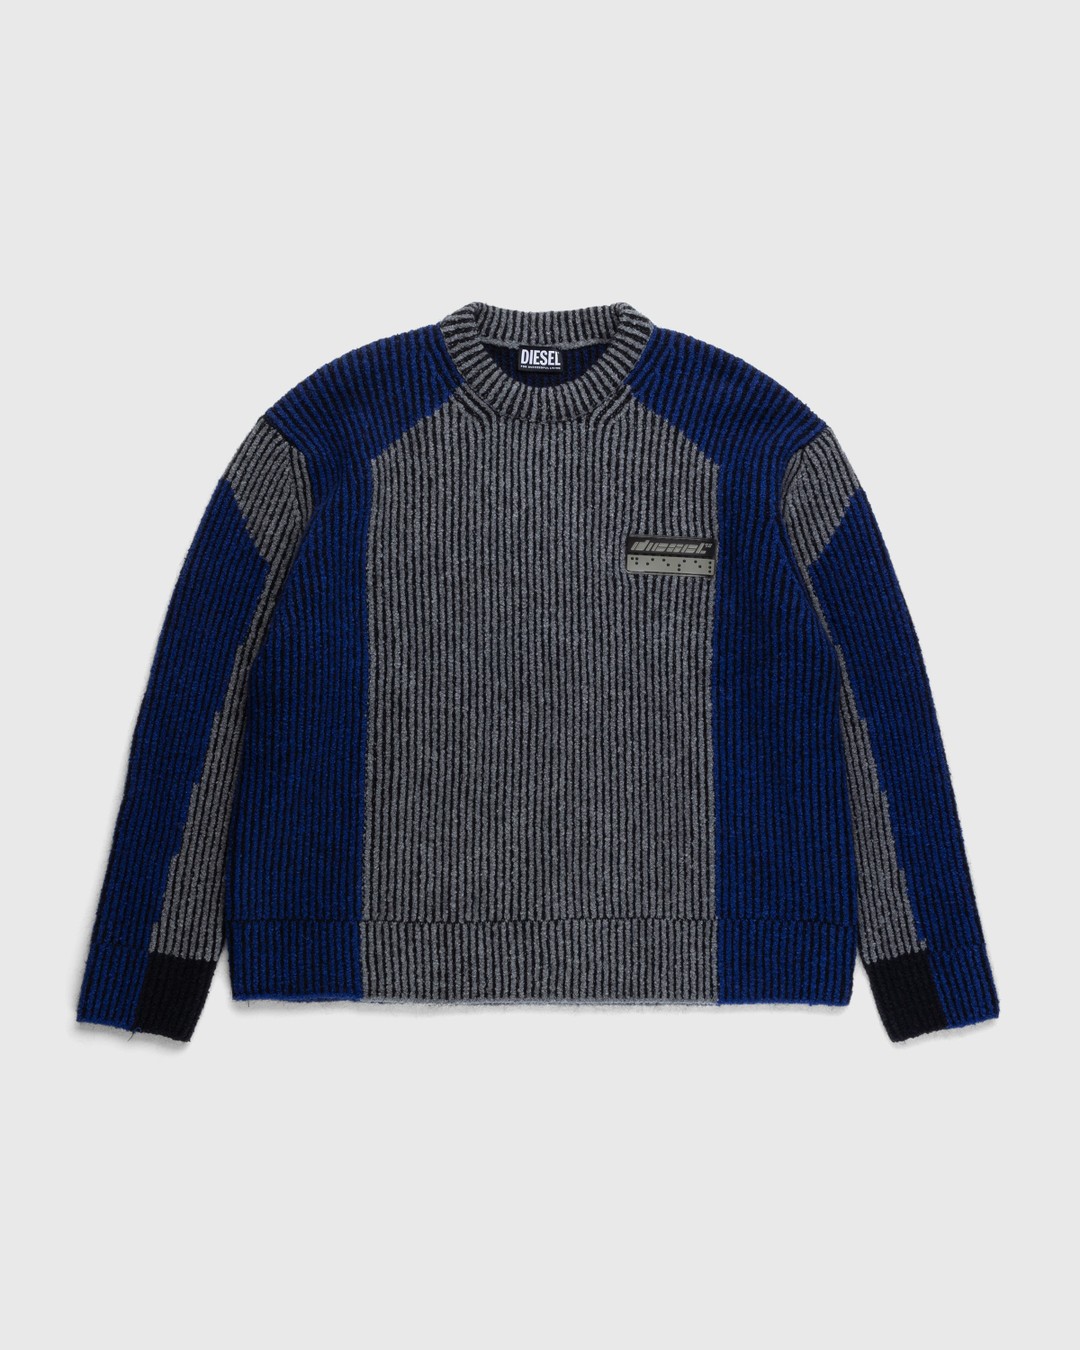 Diesel – Raig Sweater Blue - Knitwear - Blue - Image 1